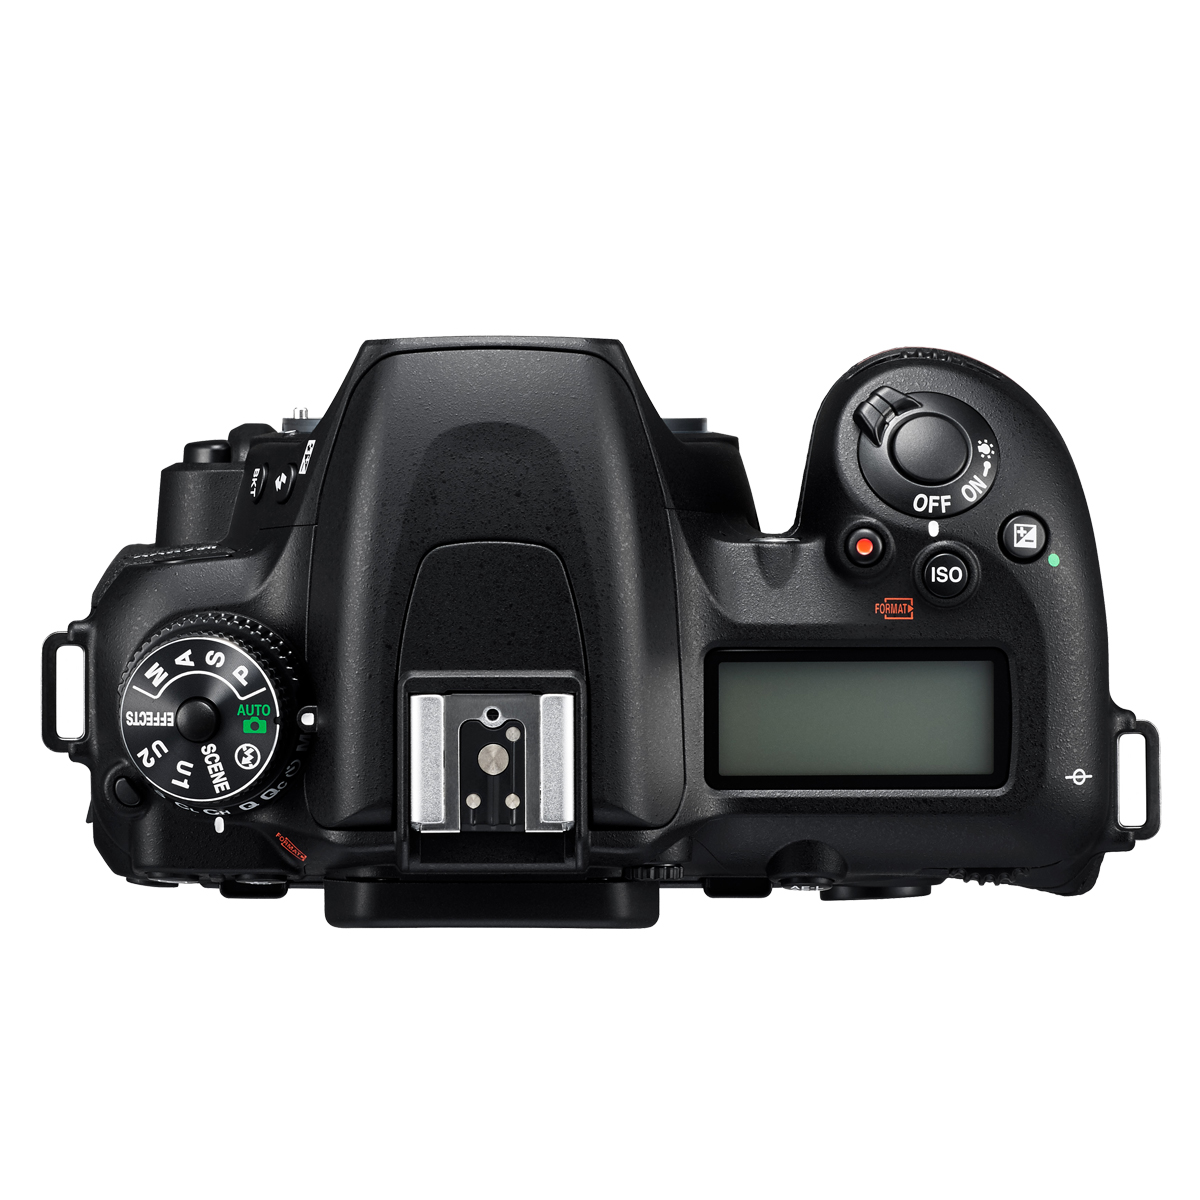 D WLAN- Spiegelreflexkamera Digitalkameragehäuse Black, 7500 LCD, NIKON